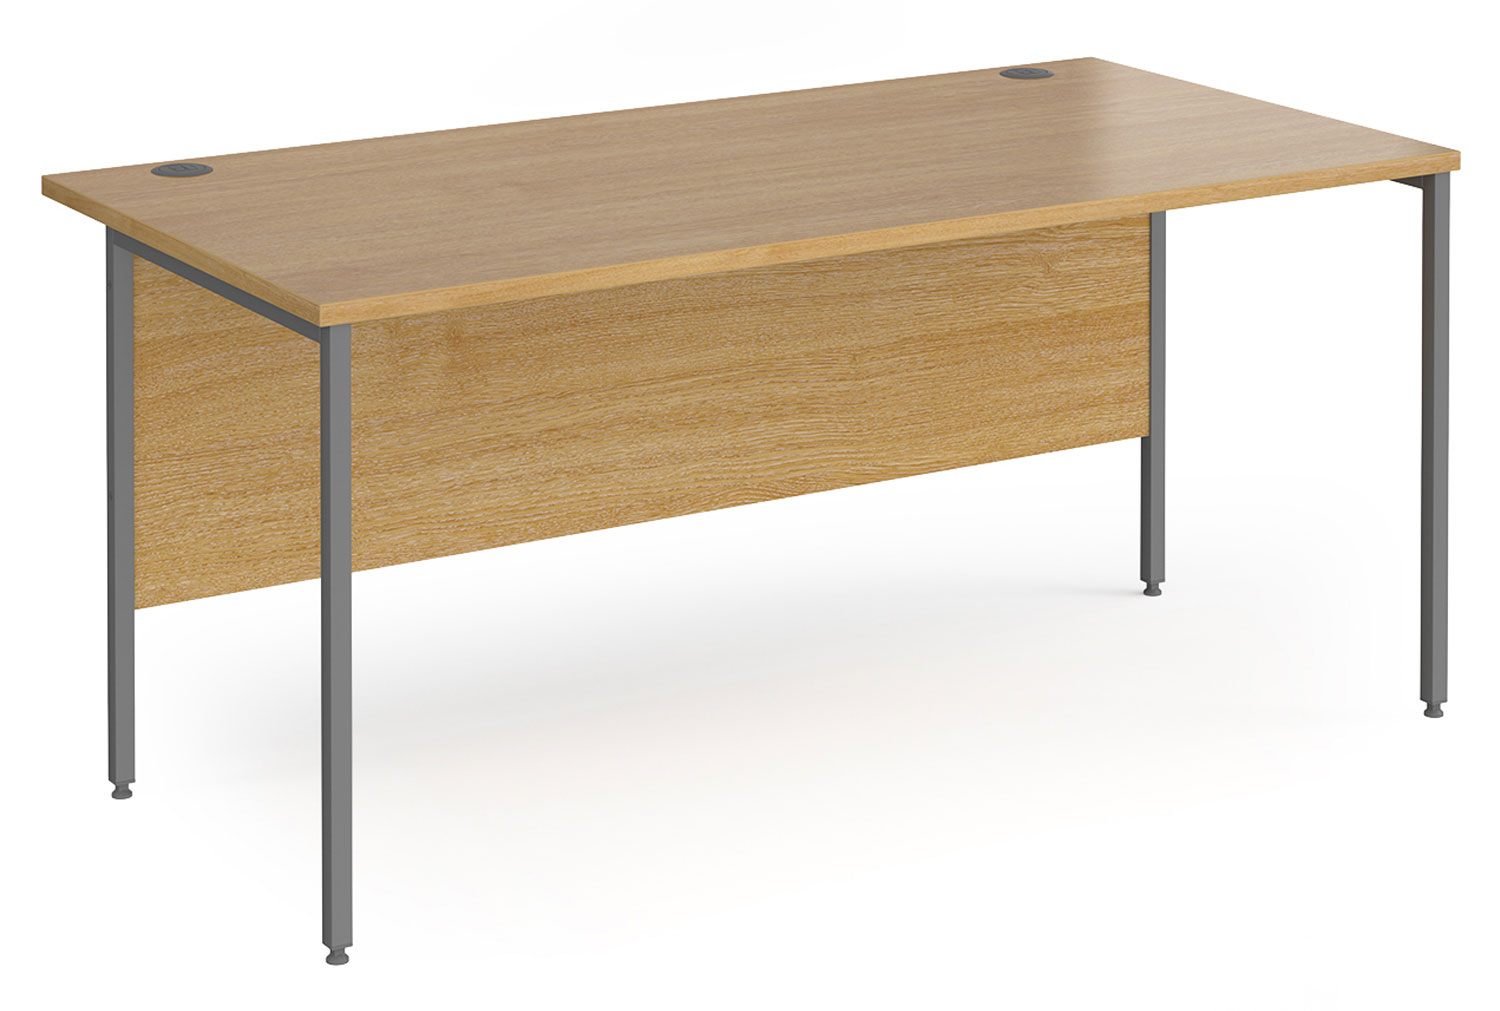 Value Line Classic+ Rectangular H-Leg Office Desk (Graphite Leg), 160wx80dx73h (cm), Oak, Express Delivery